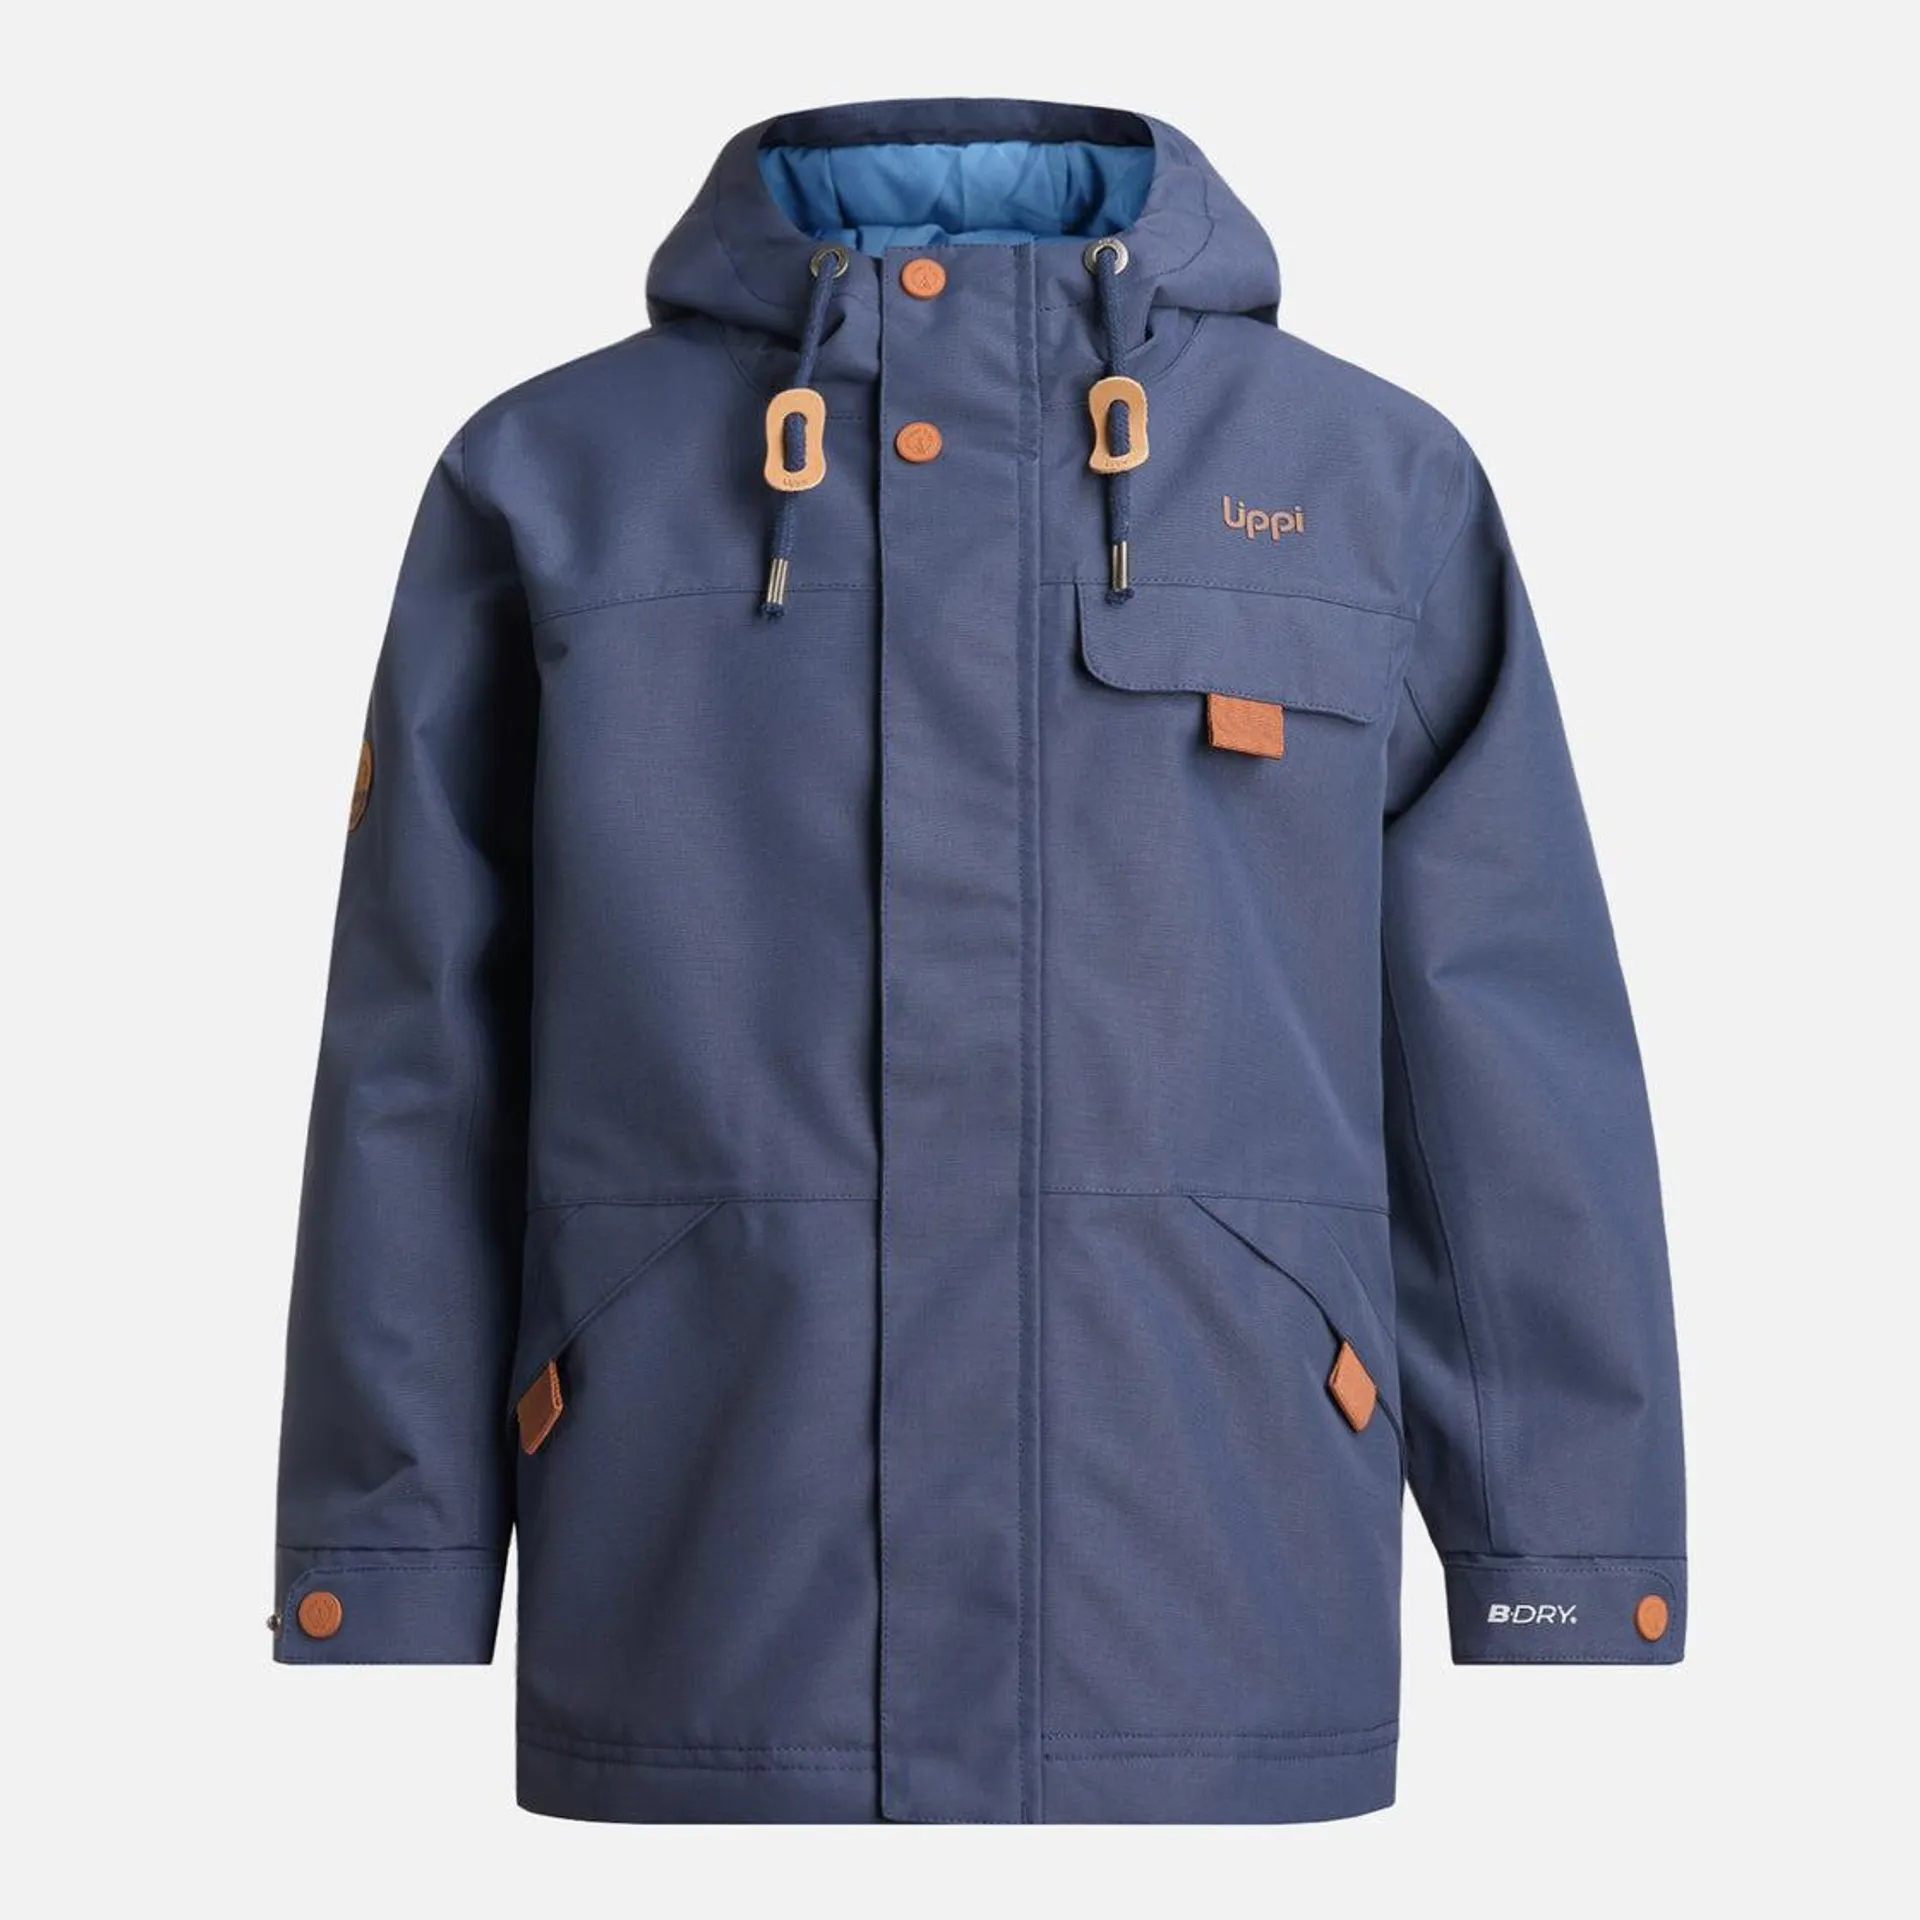 Chaqueta Niño Rainy B-Dry Hoody Jacket Azul Marino Lippi